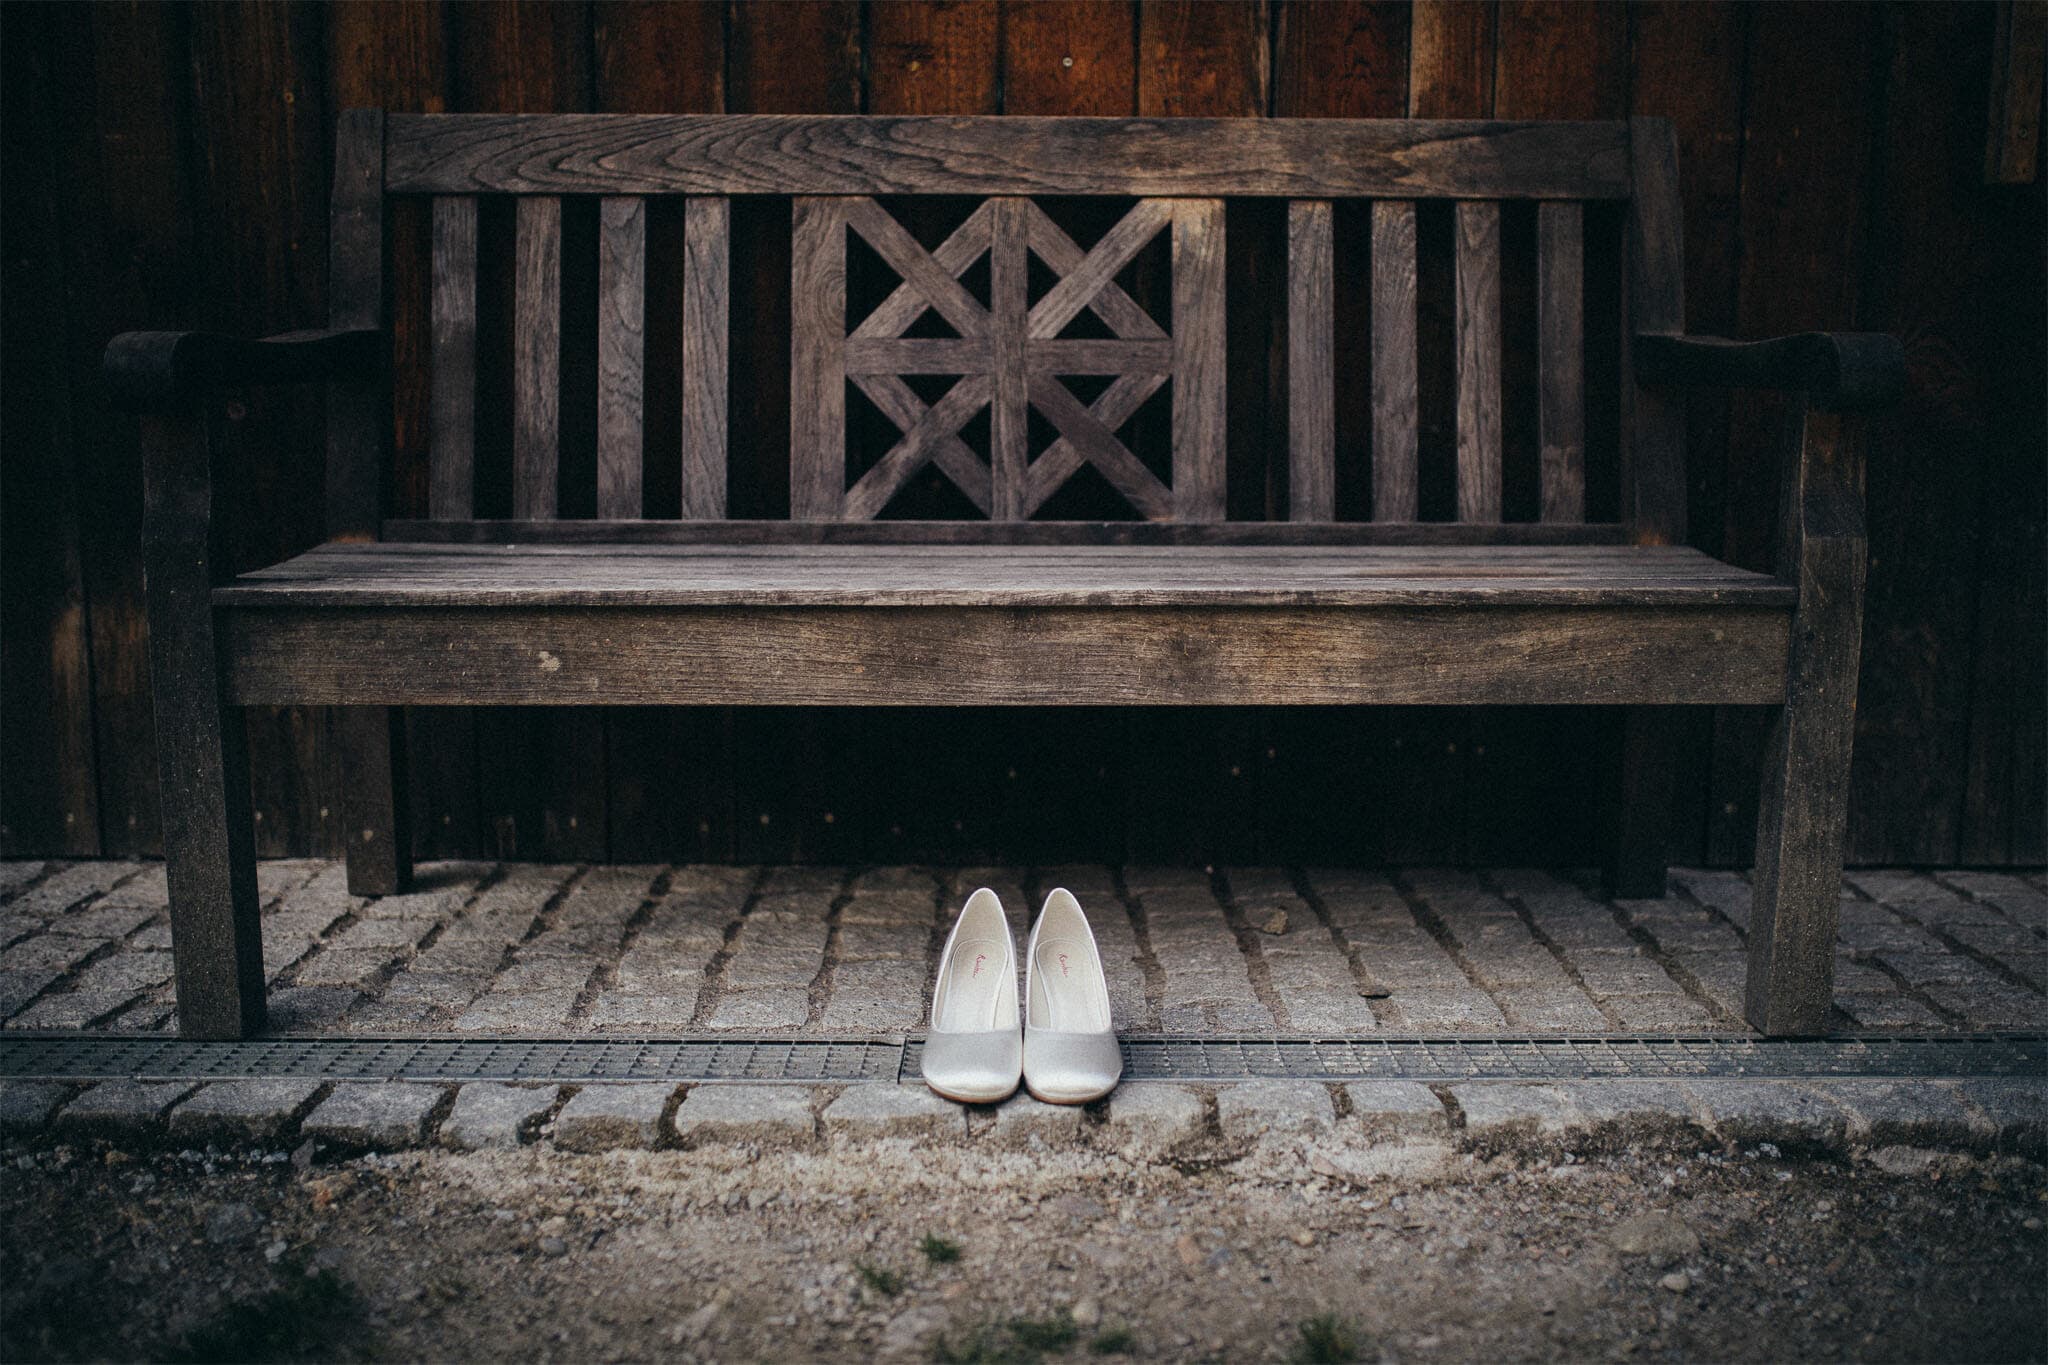 Elegante Brautschuhe vor einer hölzernen Parkbank, eingebettet in eine natürliche, ruhige Umgebung. Die Schuhe stehen im Fokus und symbolisieren den Beginn eines neuen Lebensweges.